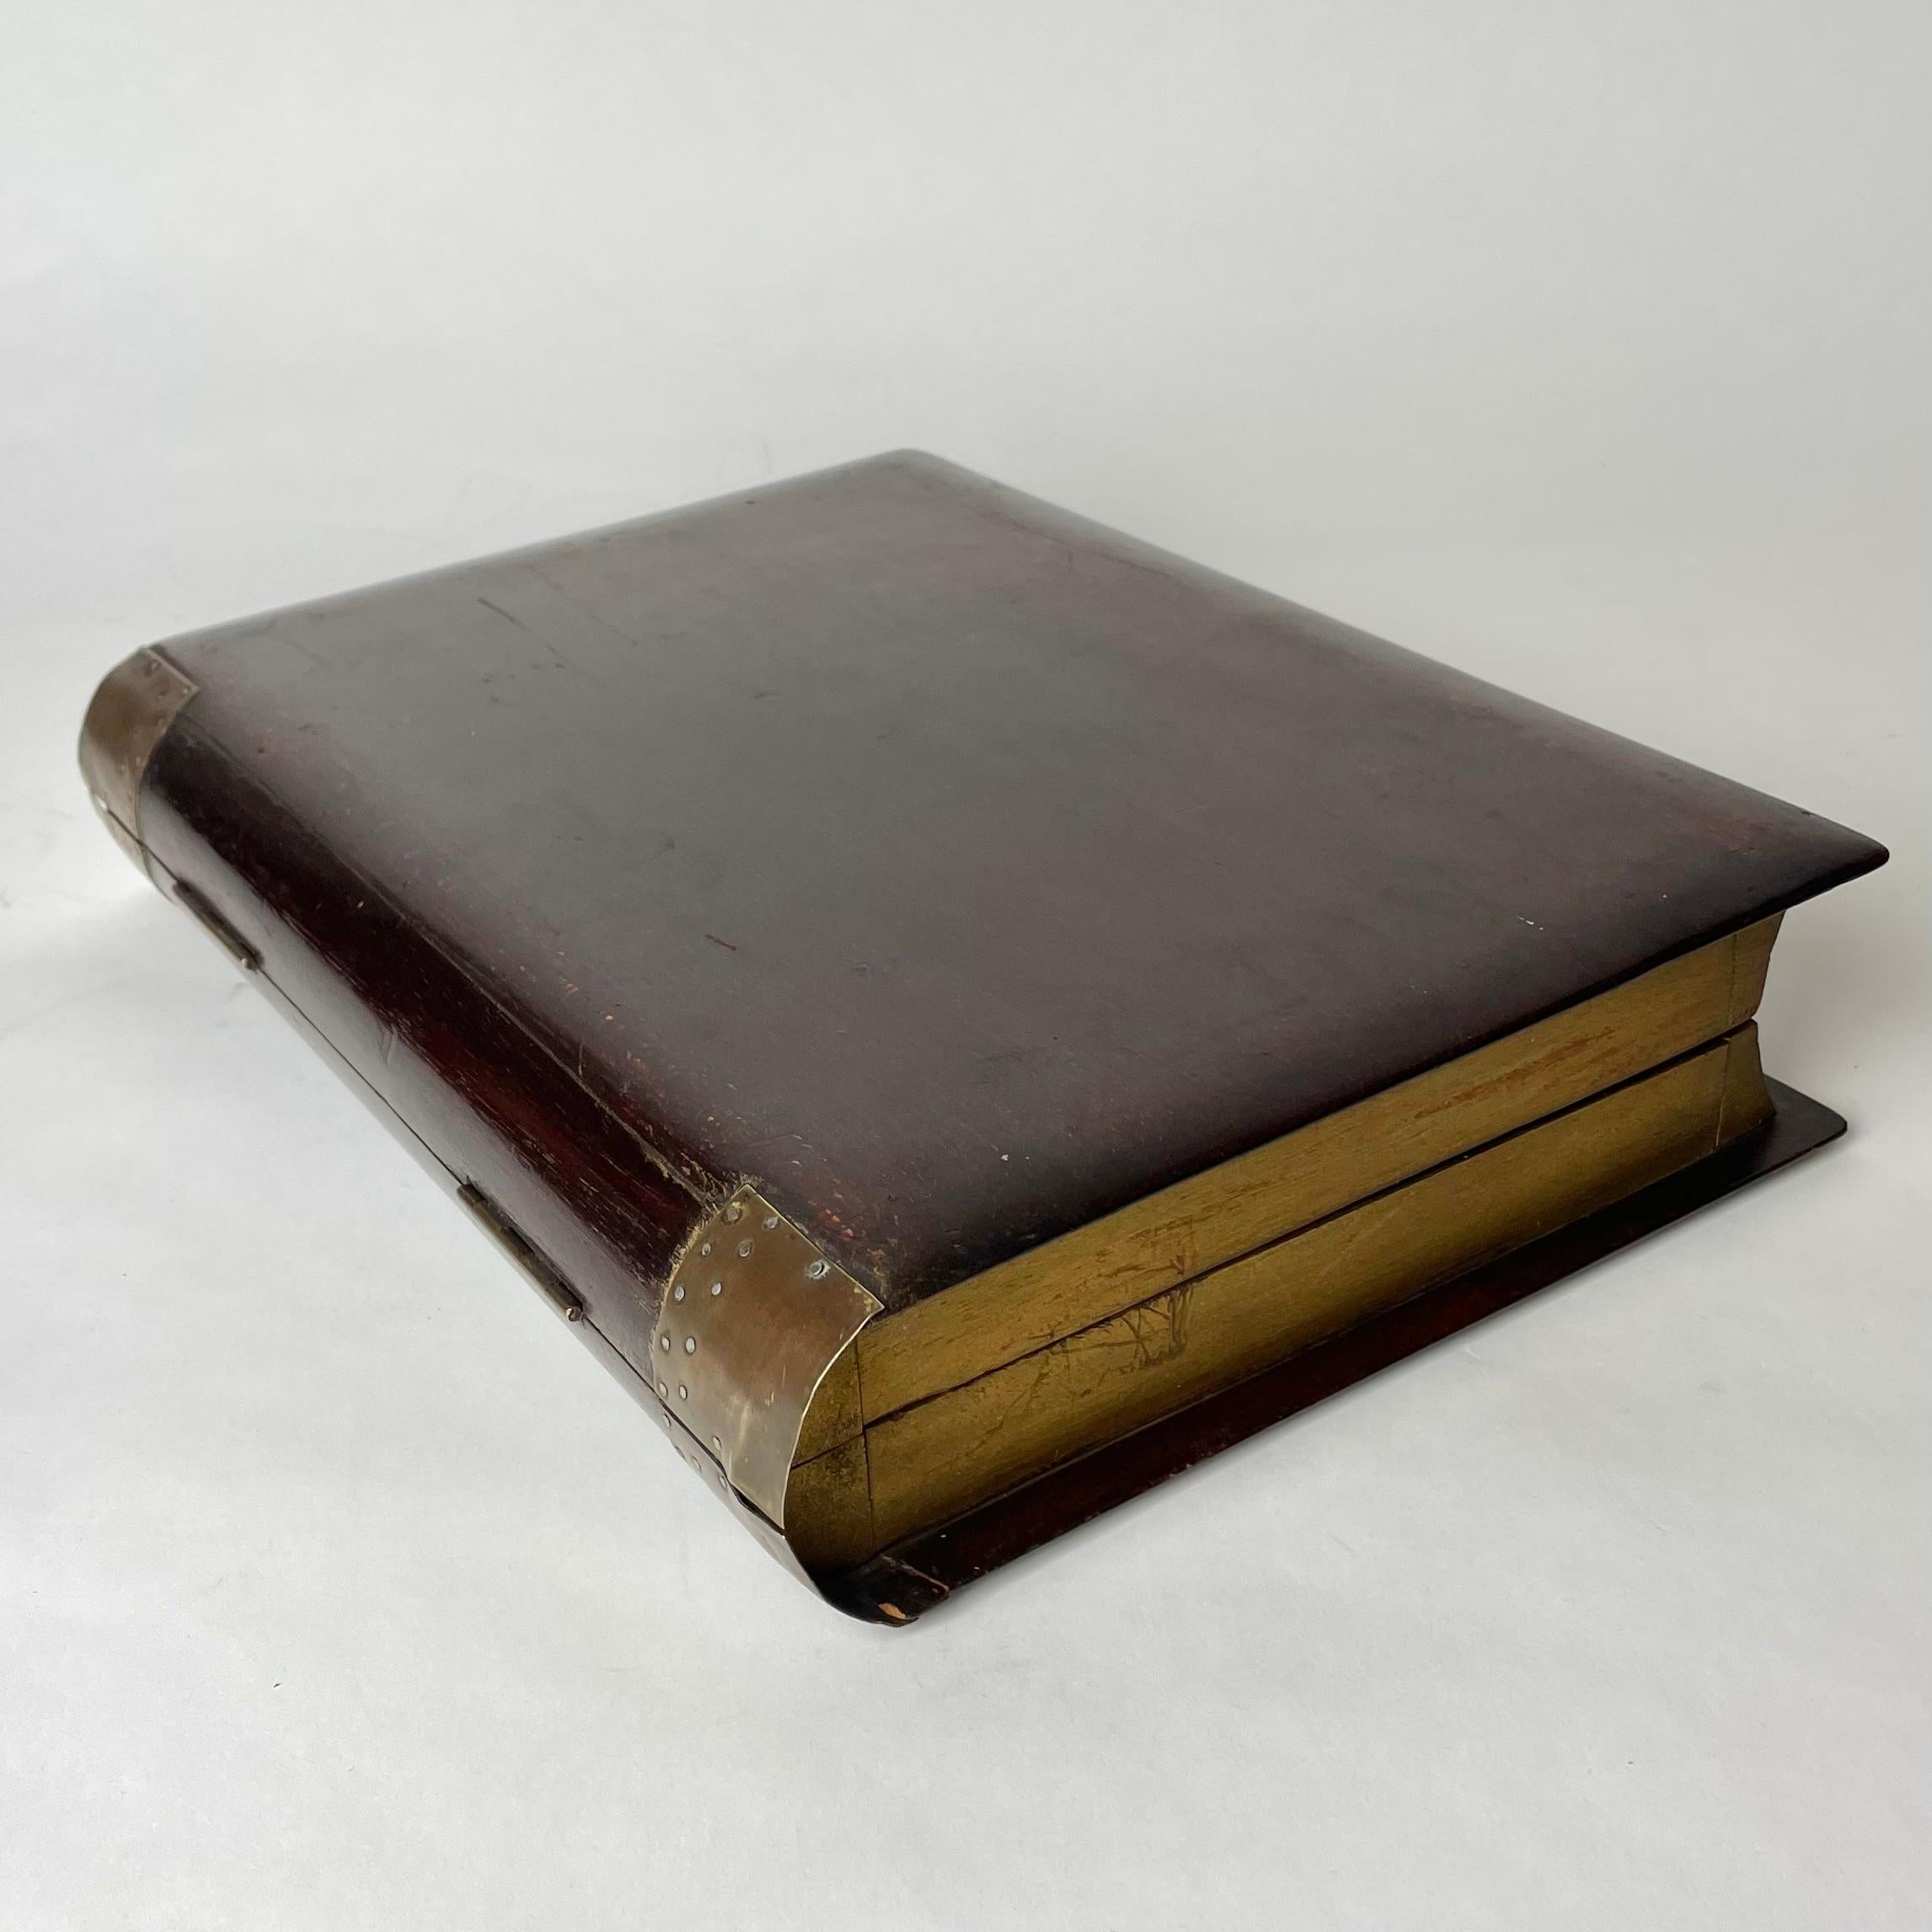 Boîte élégante et décorative en forme de grand livre du début du 20e siècle. Fabriqué en Beeche avec des détails en laiton et des pages dorées.

Usure correspondant à l'âge et à l'usage. 